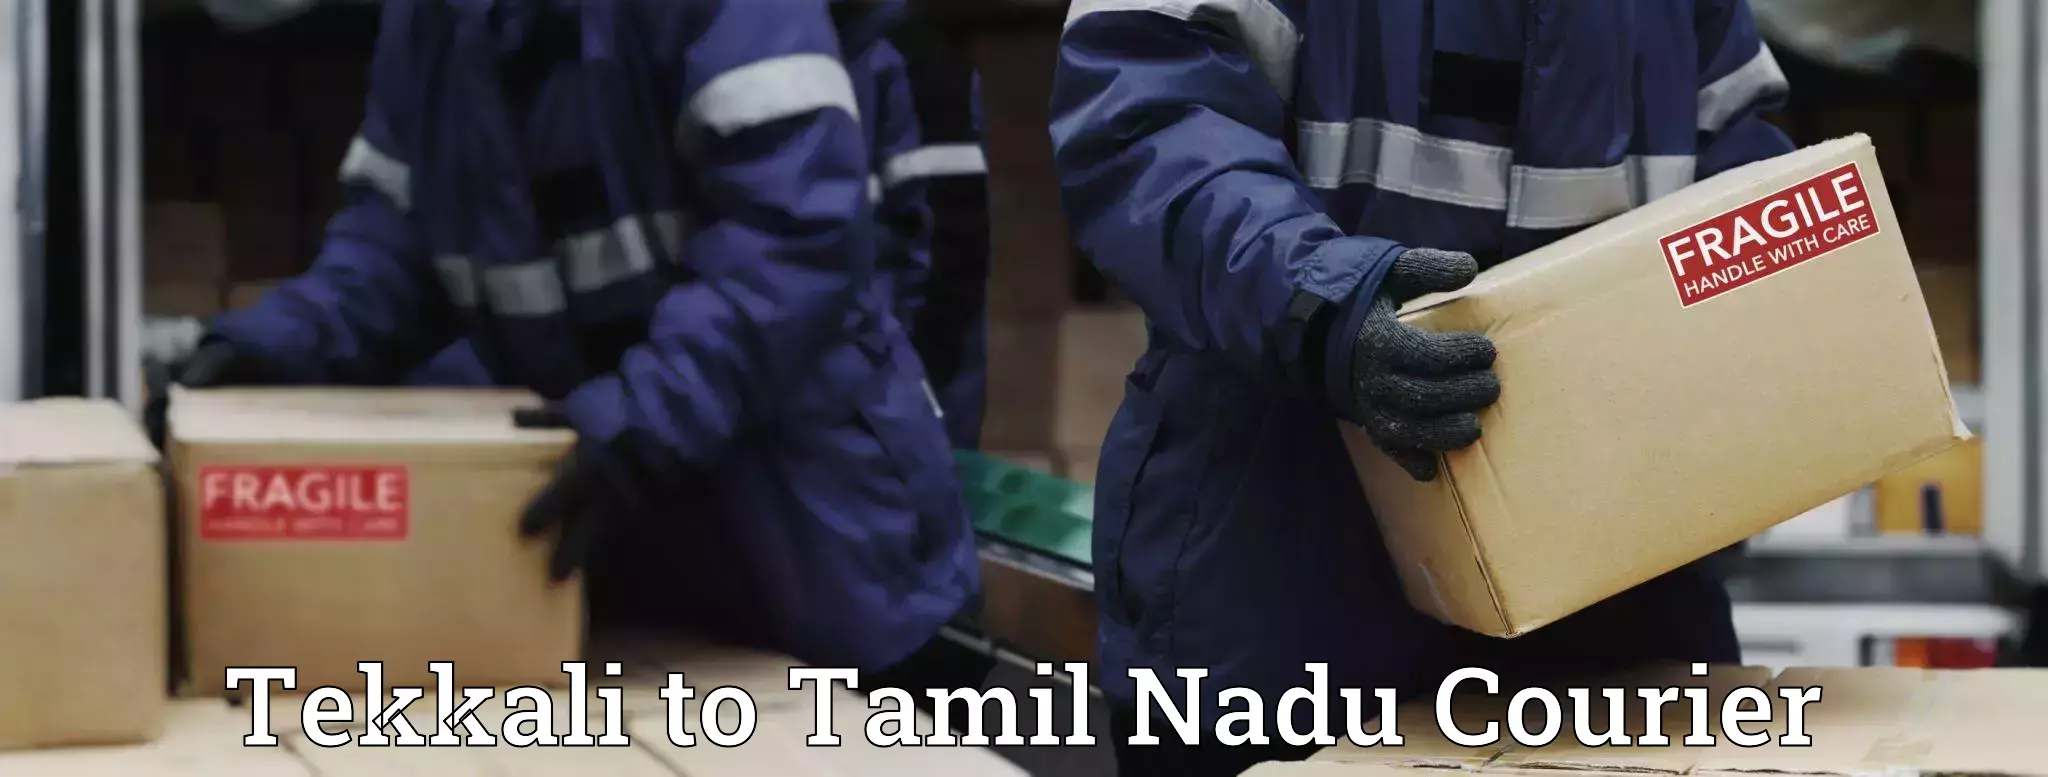 Emergency parcel delivery in Tekkali to Tamil Nadu